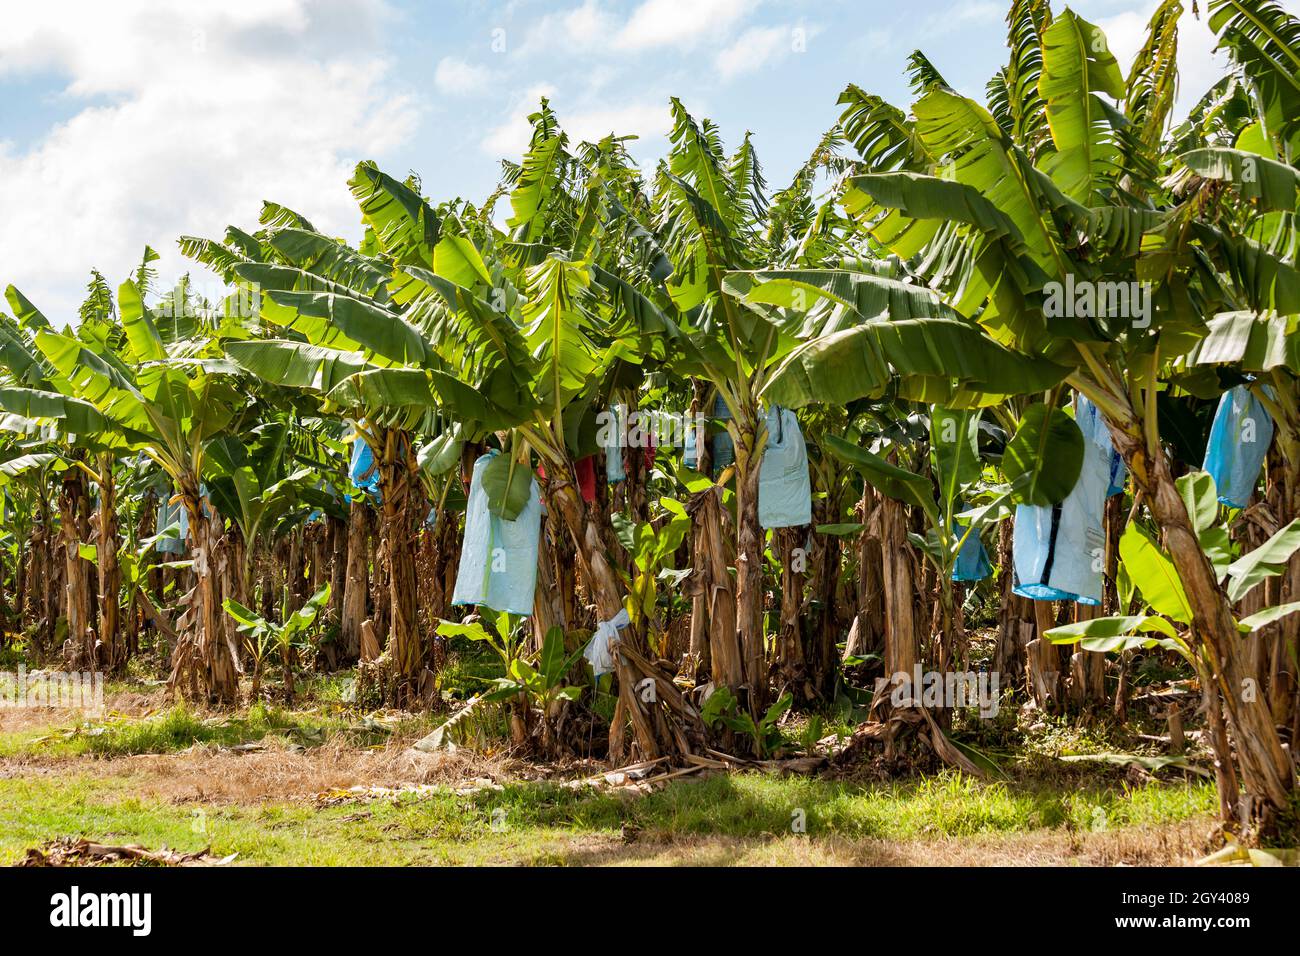 Plantación de bananos Los árboles tienen bolsas para proteger la fruta de los daños causados por insectos y otros animales, frotando contra las hojas o por el ap Foto de stock